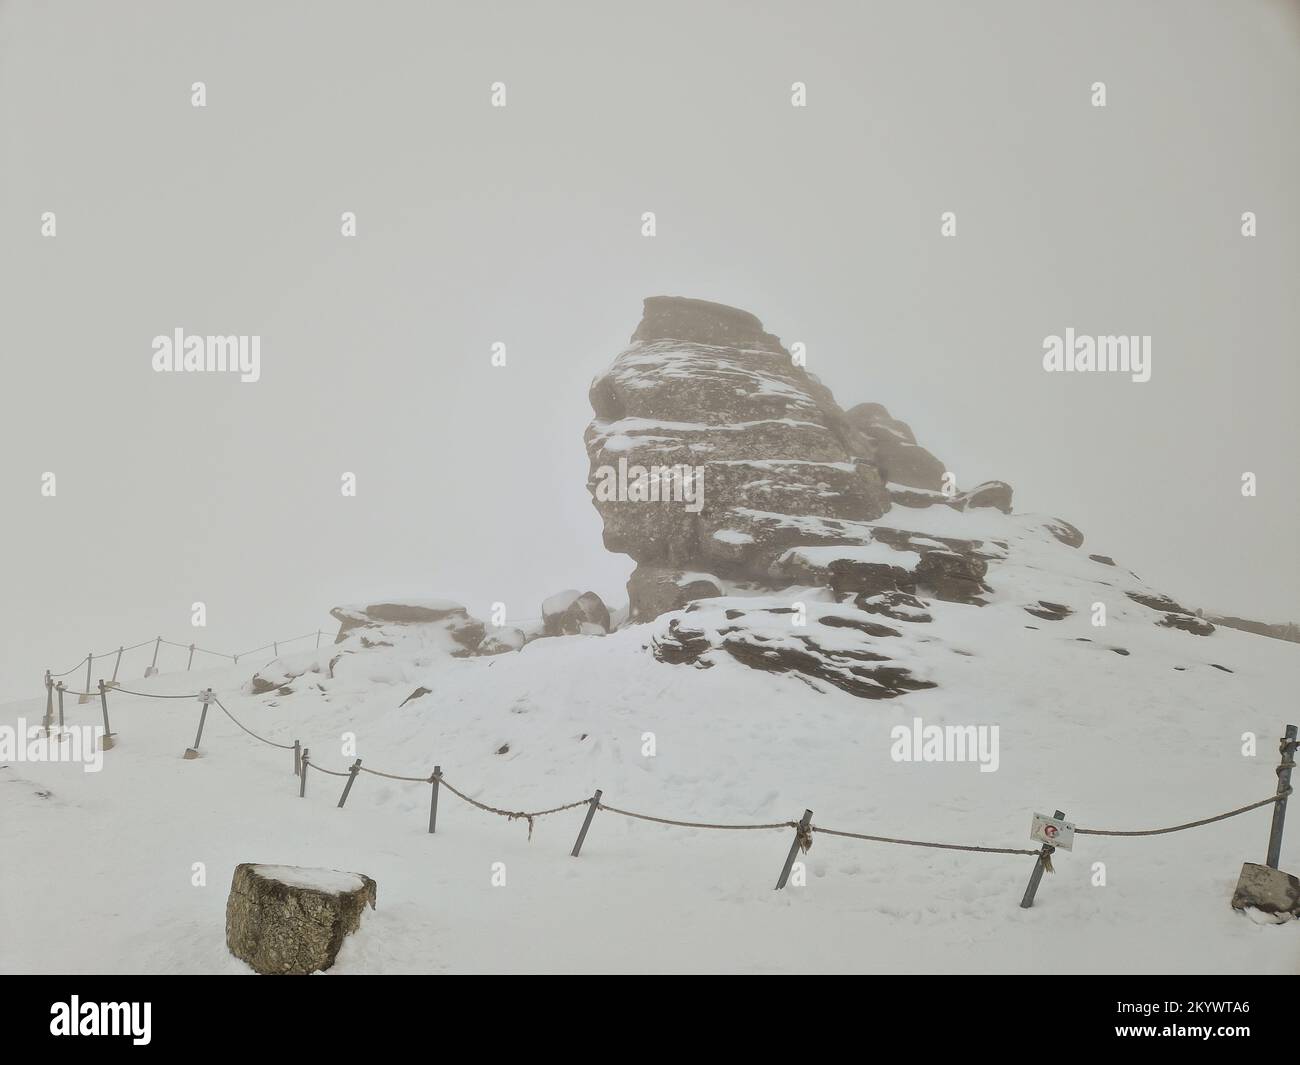 Die Sphinx (Sfinxul), eine natürliche Felsformation im Naturpark Bucegi im Bucegi-Gebirge Rumäniens, an einem verschneiten Wintertag. Stockfoto